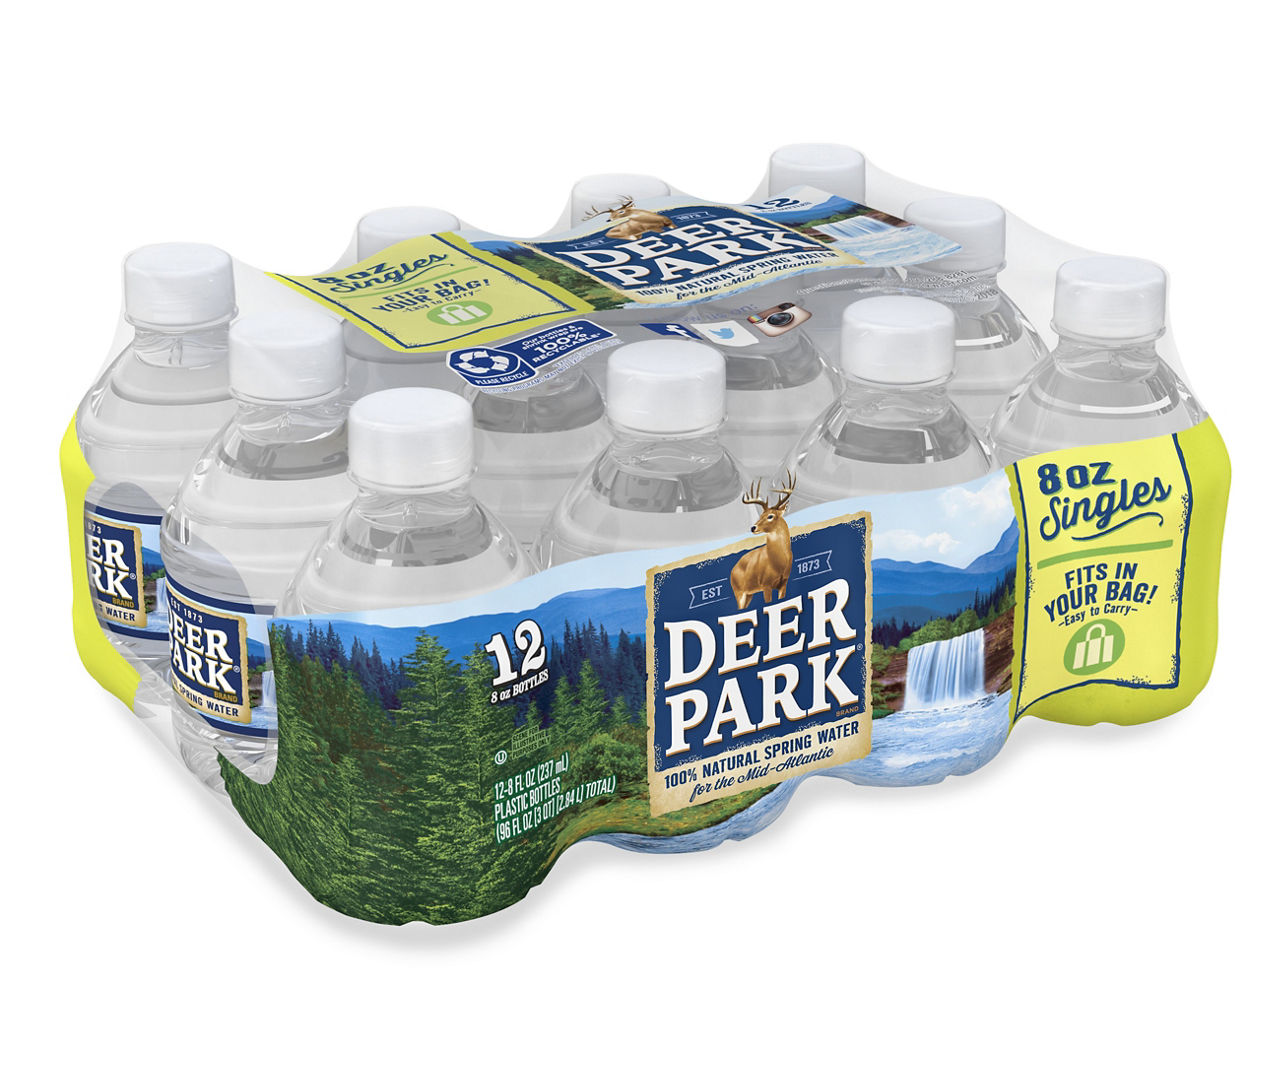 Deer Park® Spring Water, 8 oz 12-Pack